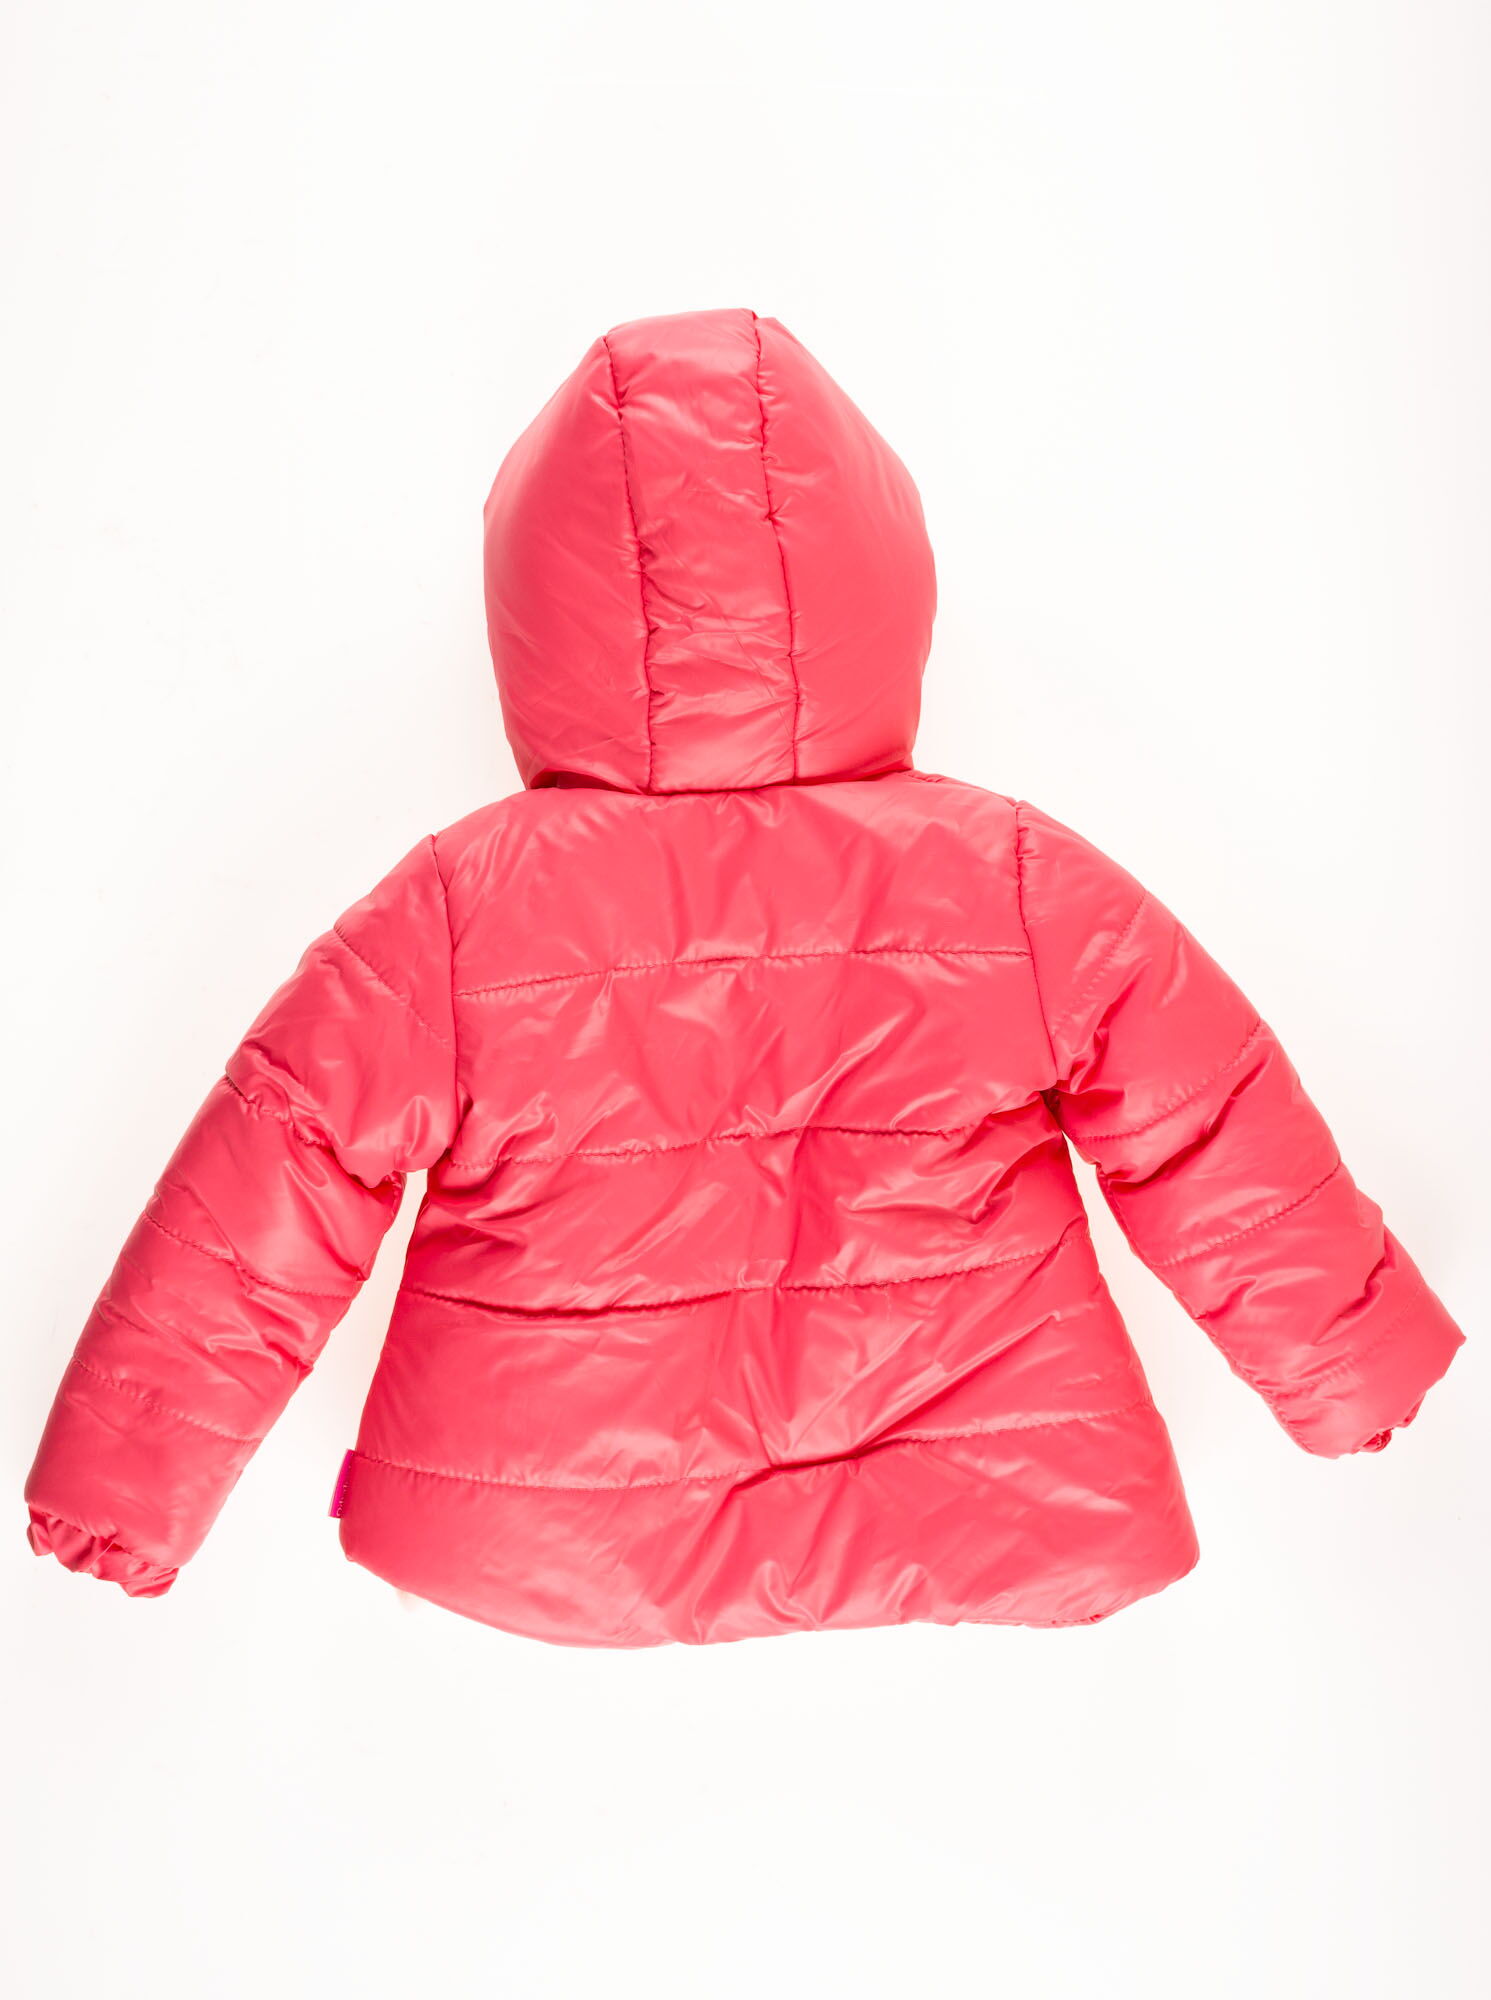 Комбинезон раздельный зимний для девочки (куртка+штаны) ОДЯГАЙКО коралловый 20023/32005 - размеры